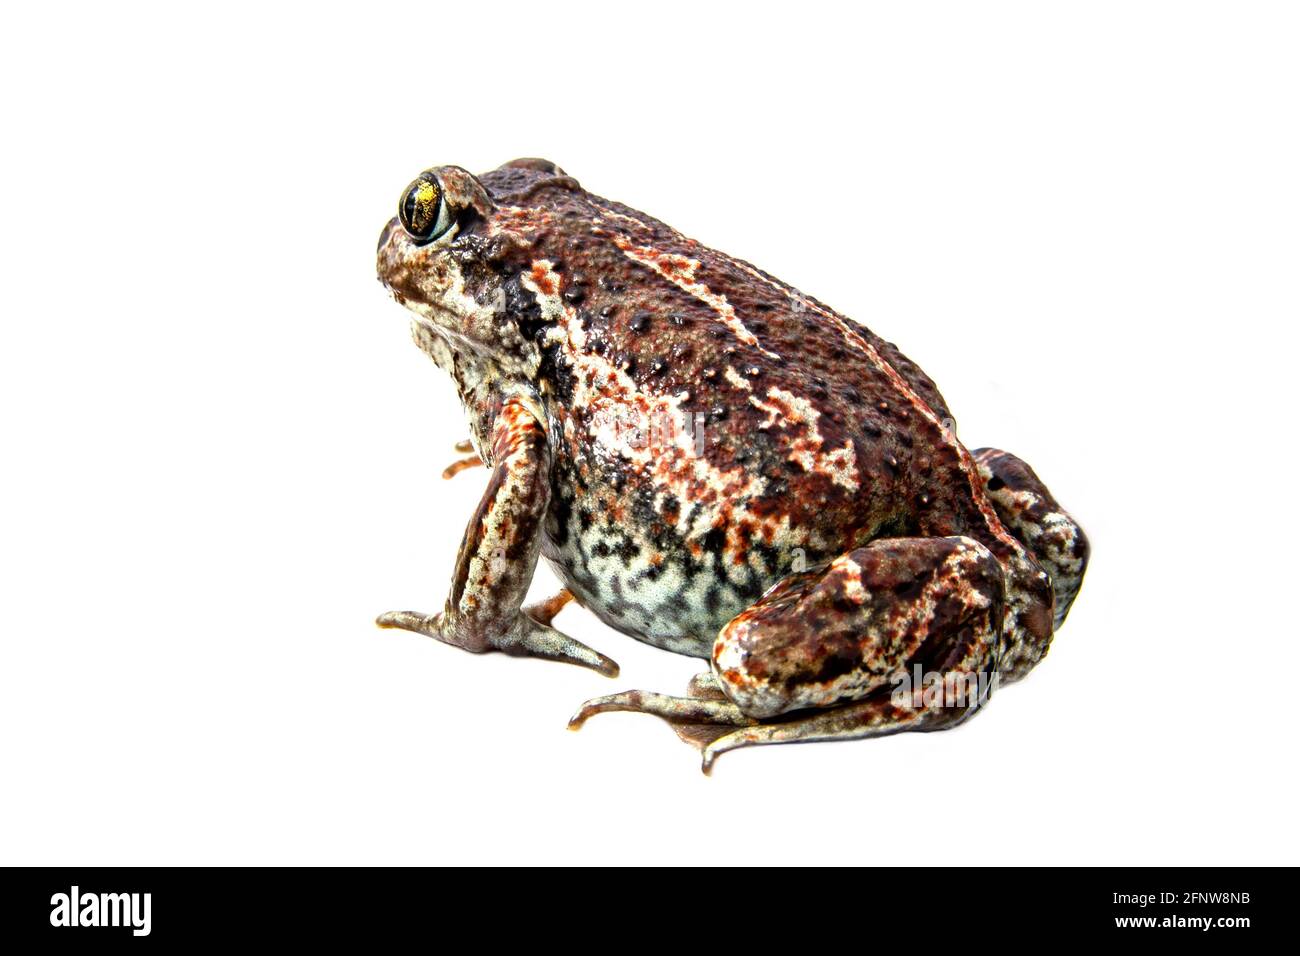 Europäischer gemeiner brauner Frosch isoliert auf weißem Hintergrund. Nahaufnahme von Rana temporaria. Stockfoto